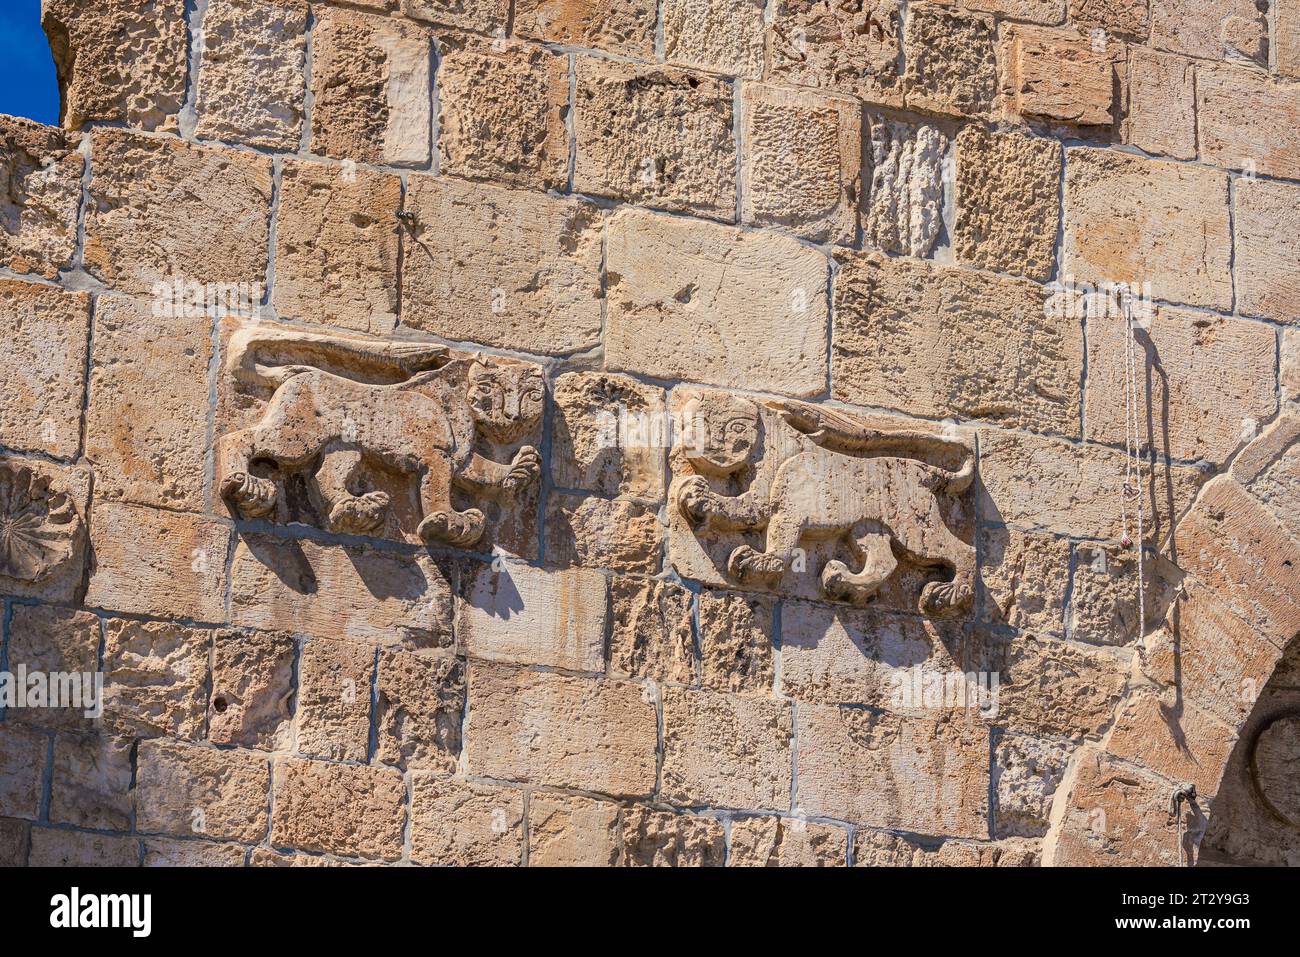 La porte des Lions est l'une des sept entrées de la vieille ville de Jérusalem. Il est nommé d'après les Lions sculptés sur son mur. Banque D'Images